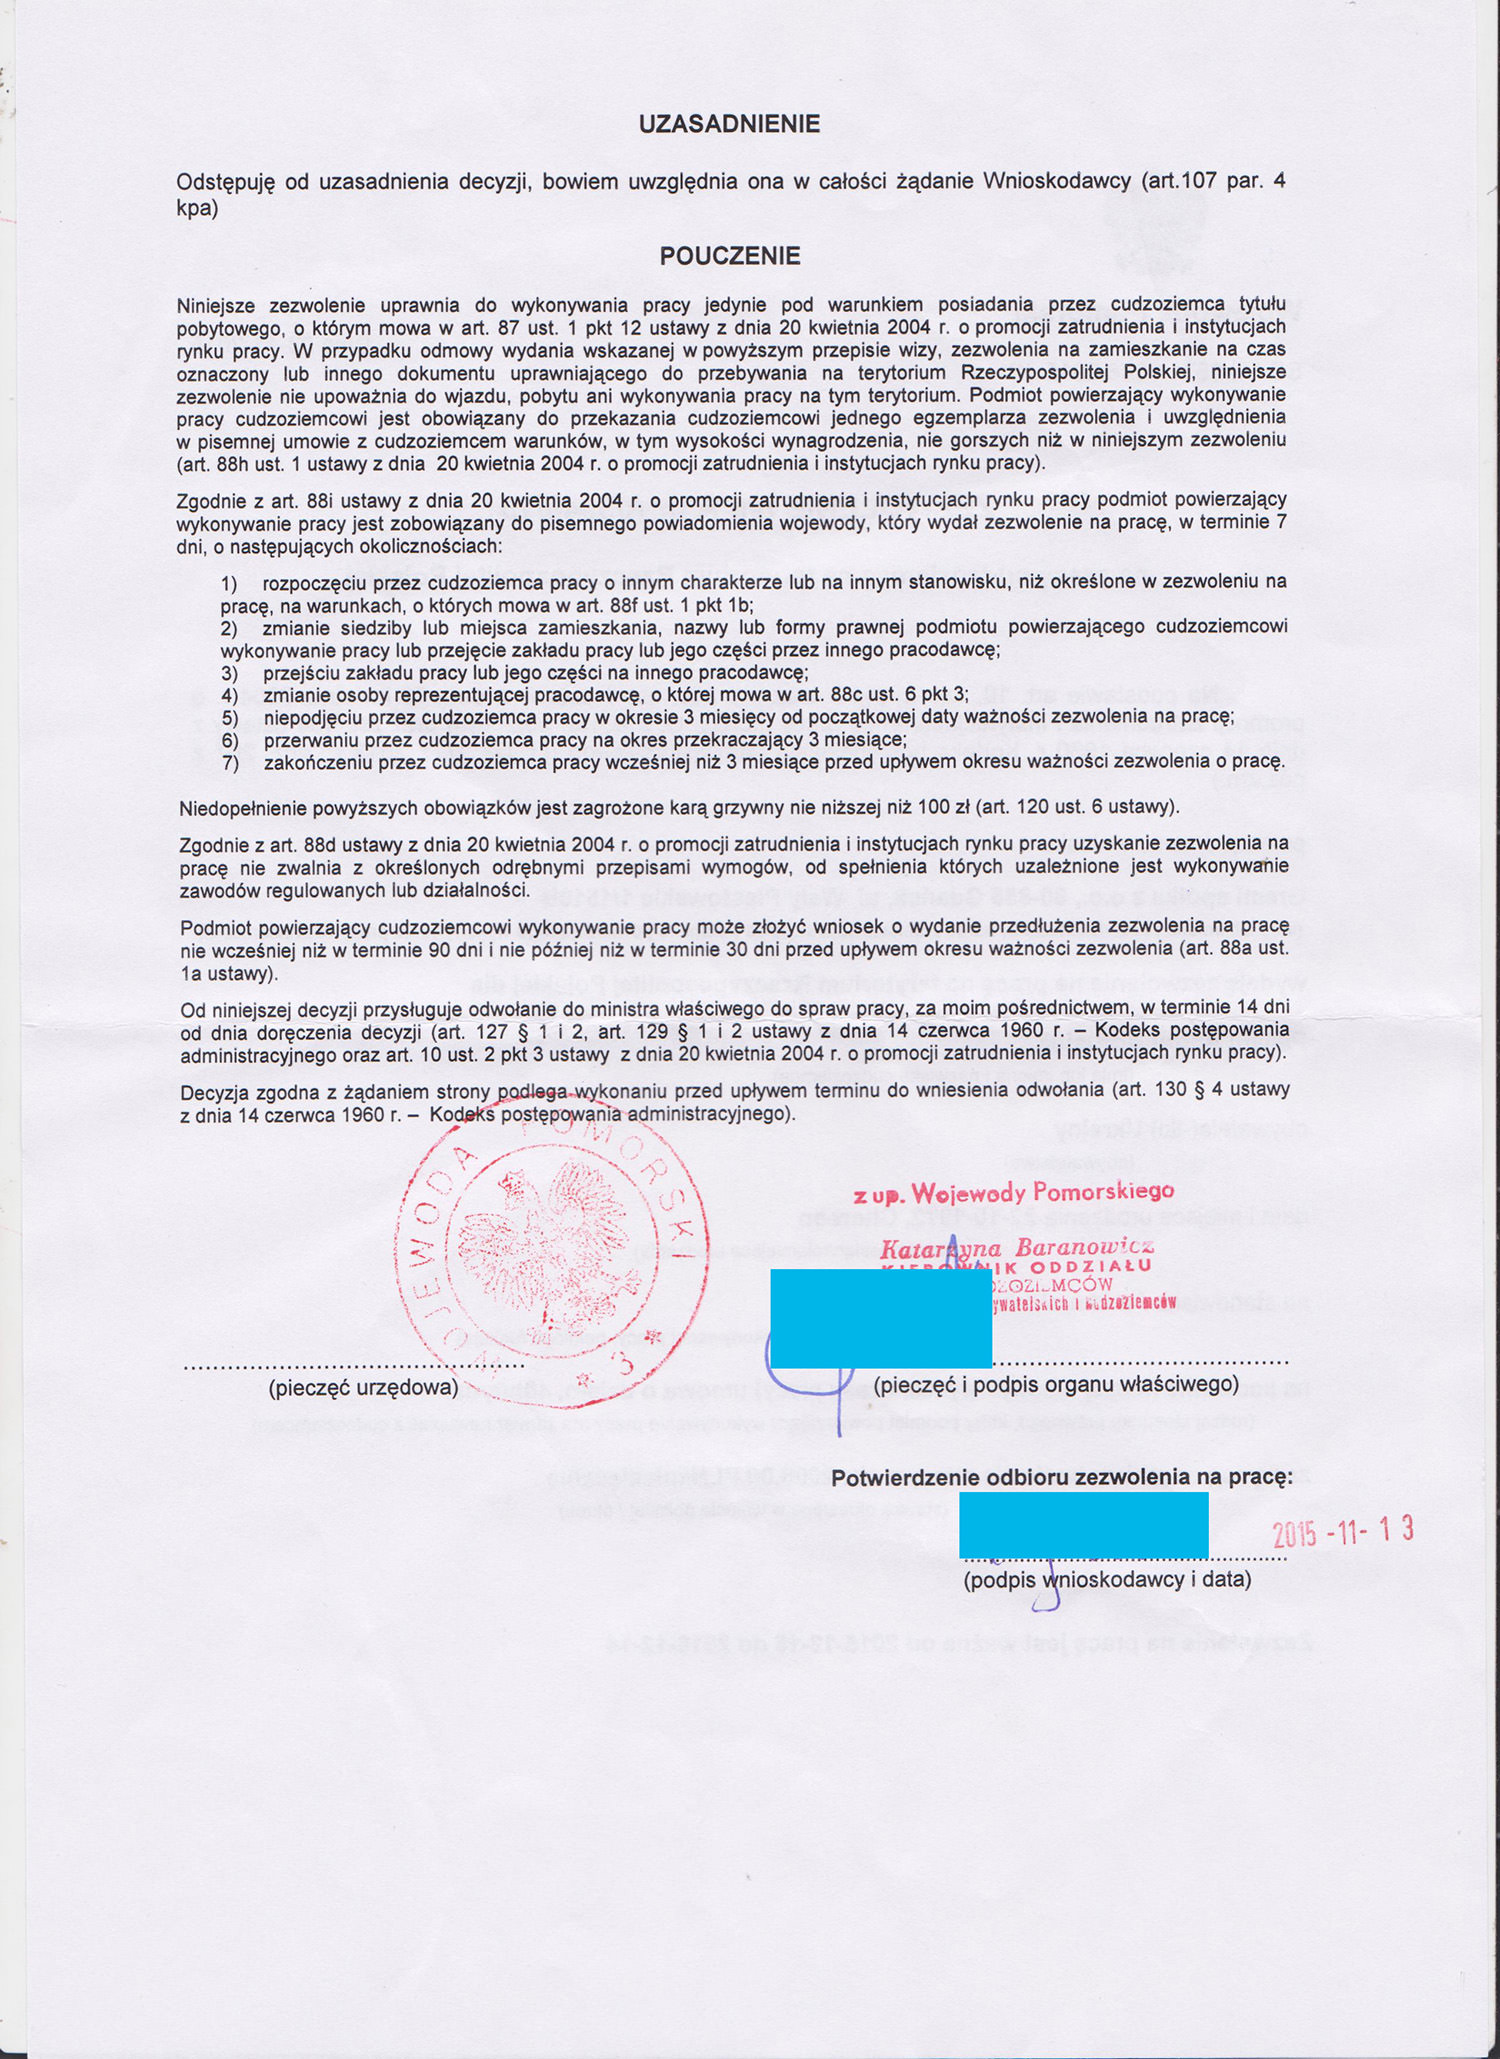 Деловая виза в польшу для россиян - список документов для бизнес визы | provisy.ru